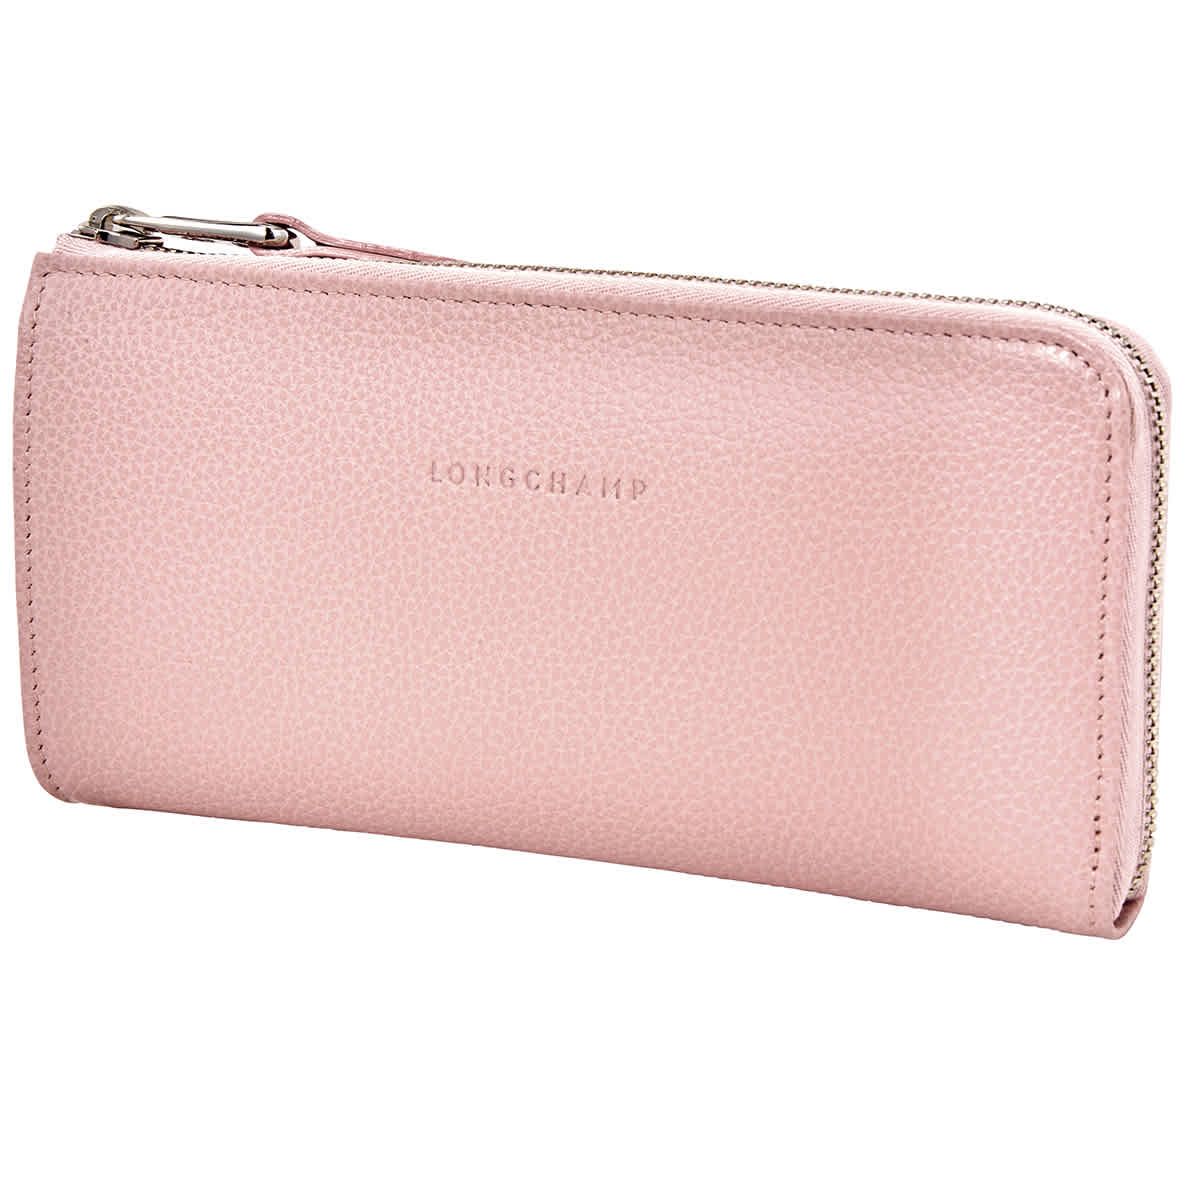 longchamp 3d zip around wallet